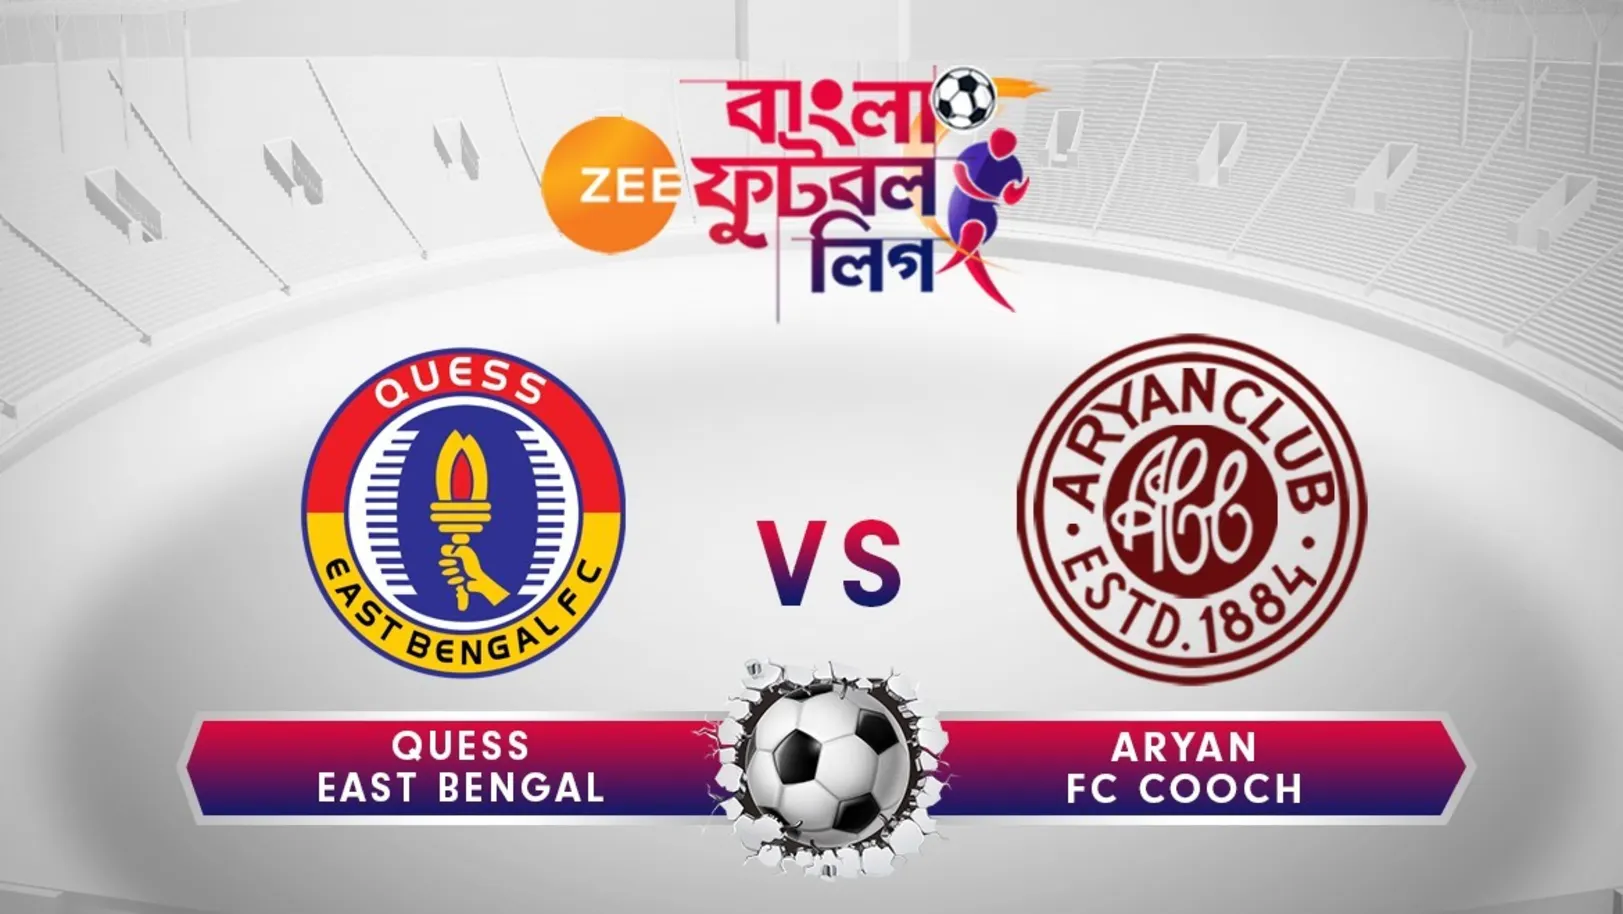 Aryan FC vs East Bengal - June 21 - ZBFL 2019 Episode 41